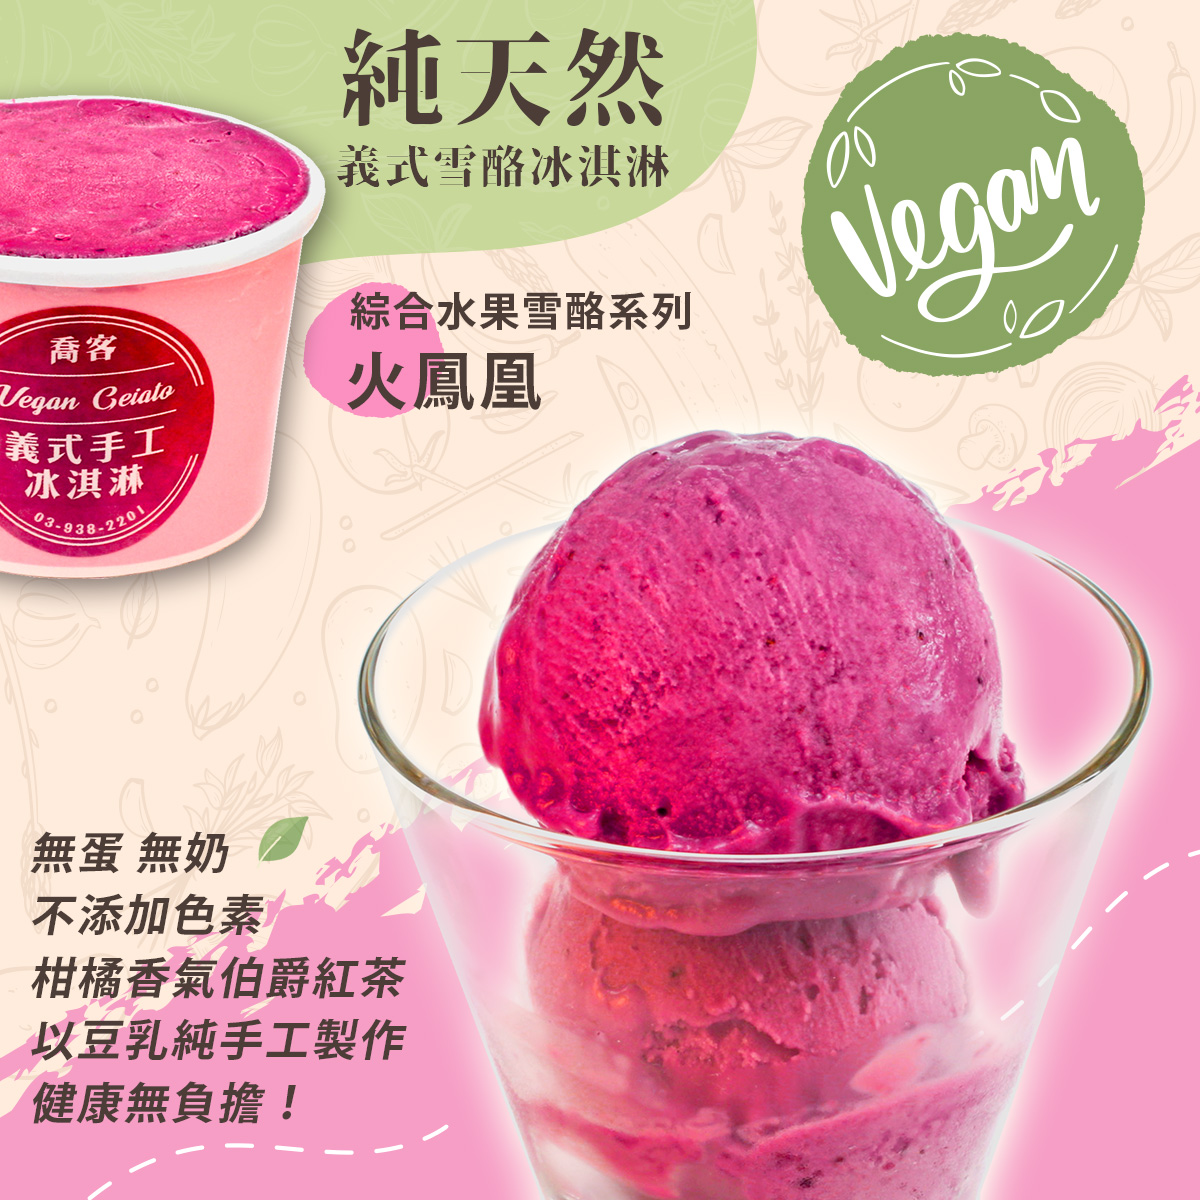 【喬客】綜合水果雪酪系列-火鳳凰 冰淇淋